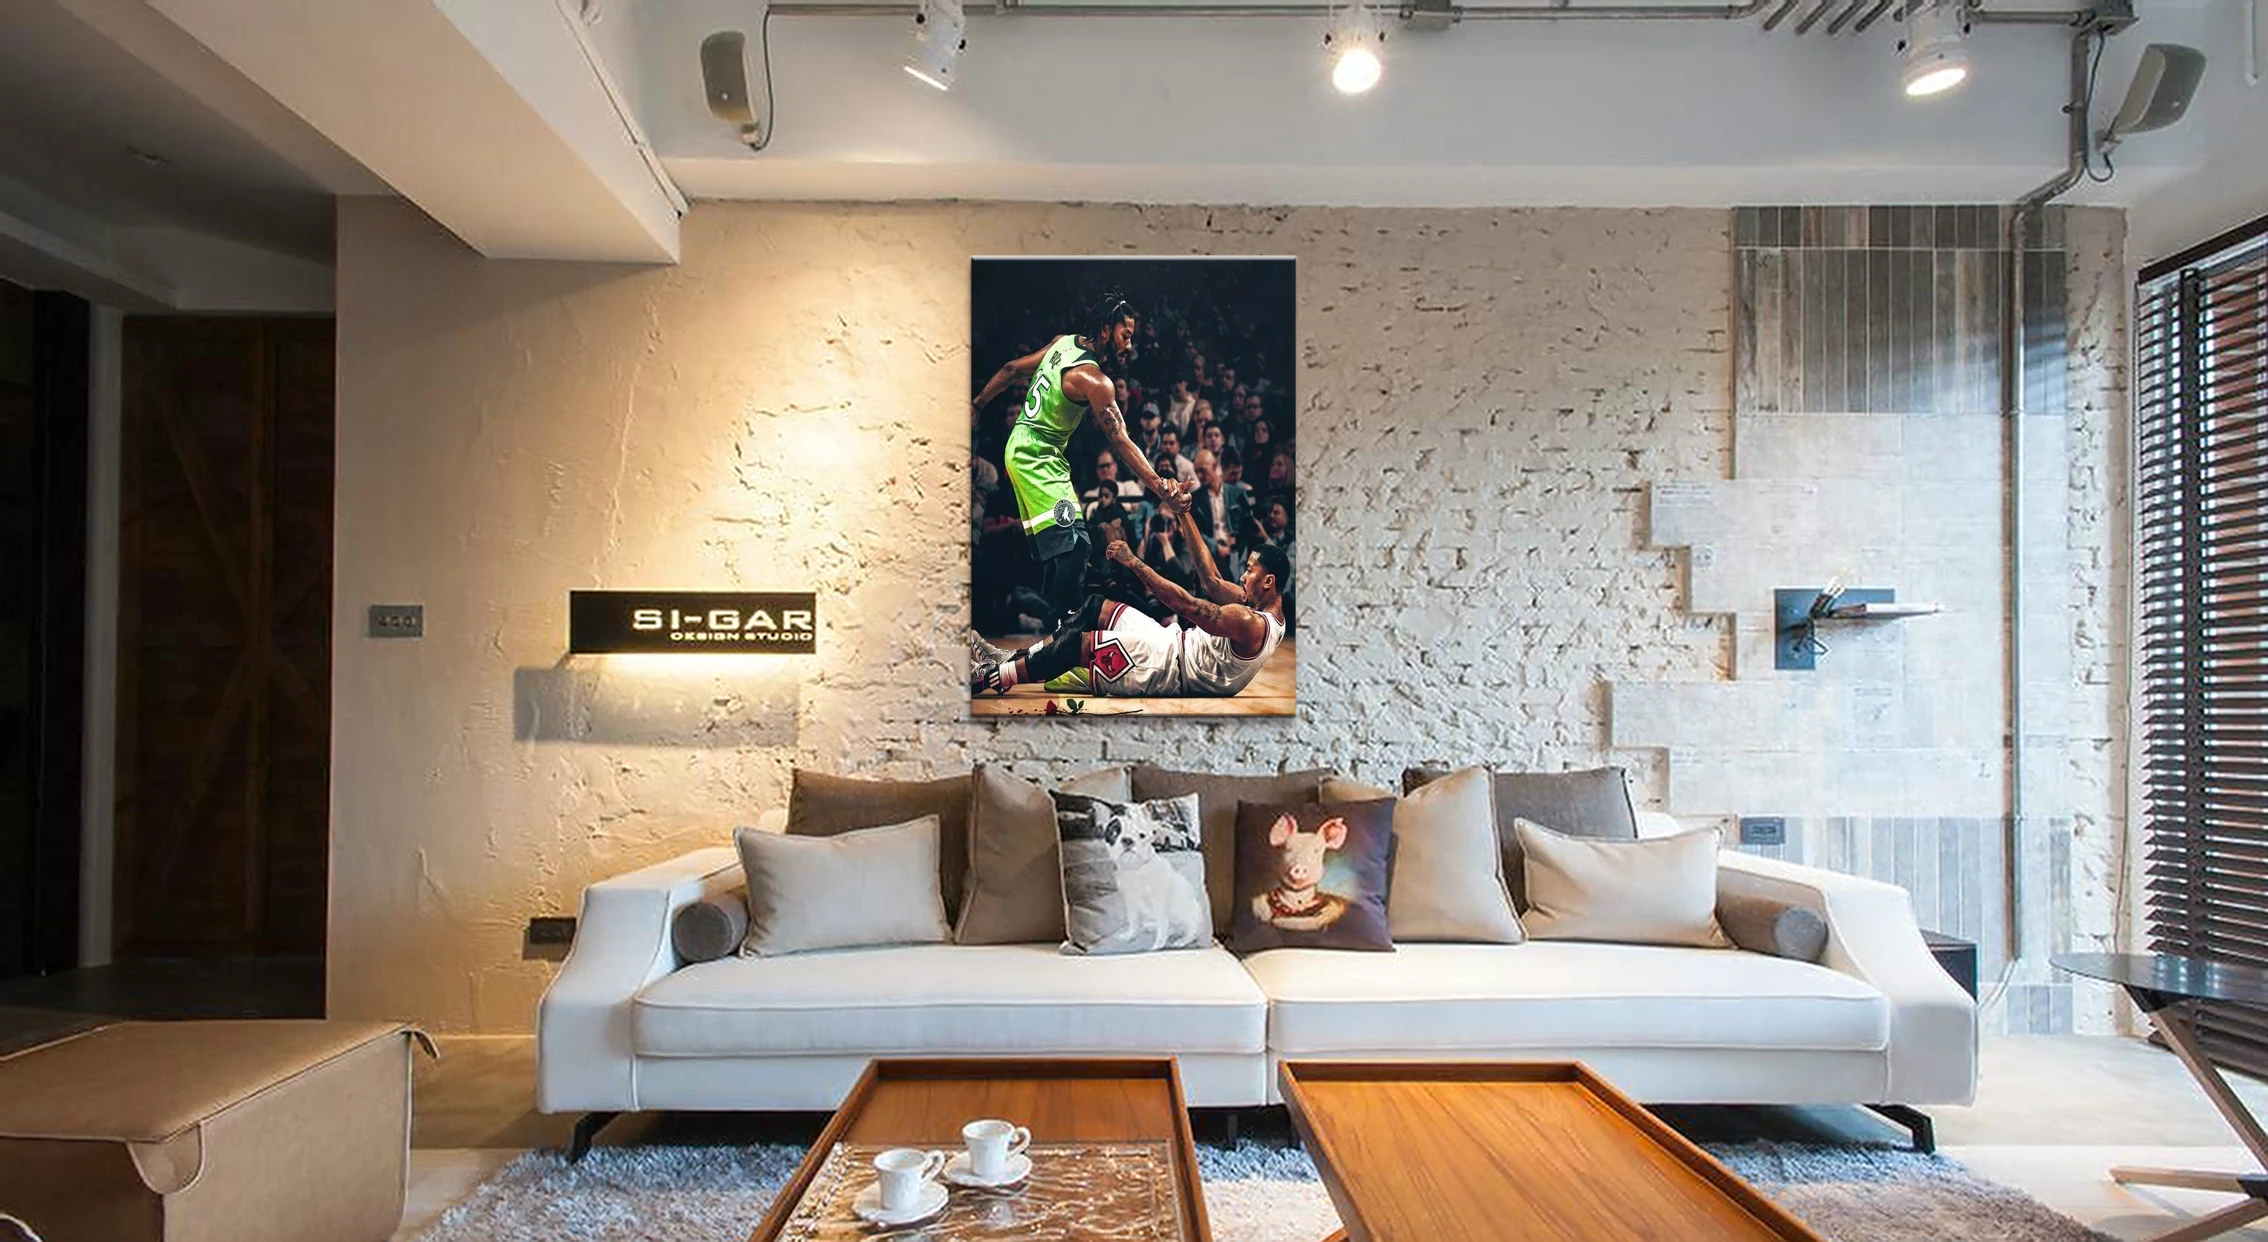 1 шт. декоративный Деррик Роза хороший баскетболист плакат фотографии пейзаж стены для гостиной Декор холст